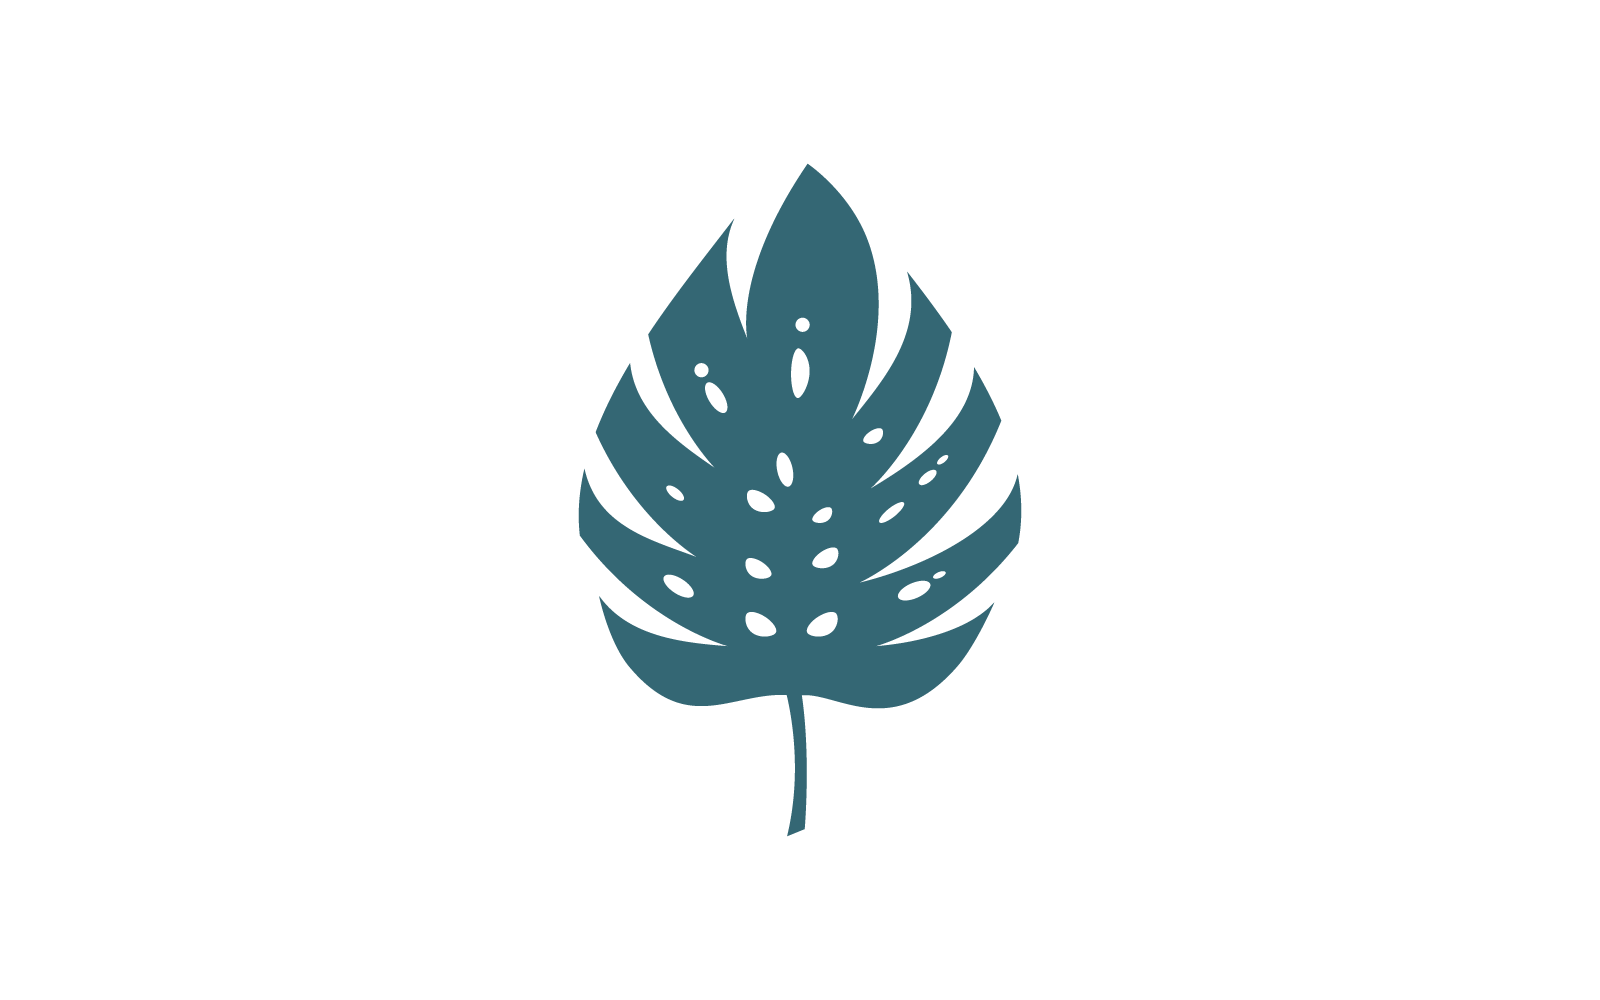 Monstera leaf logo vector design template